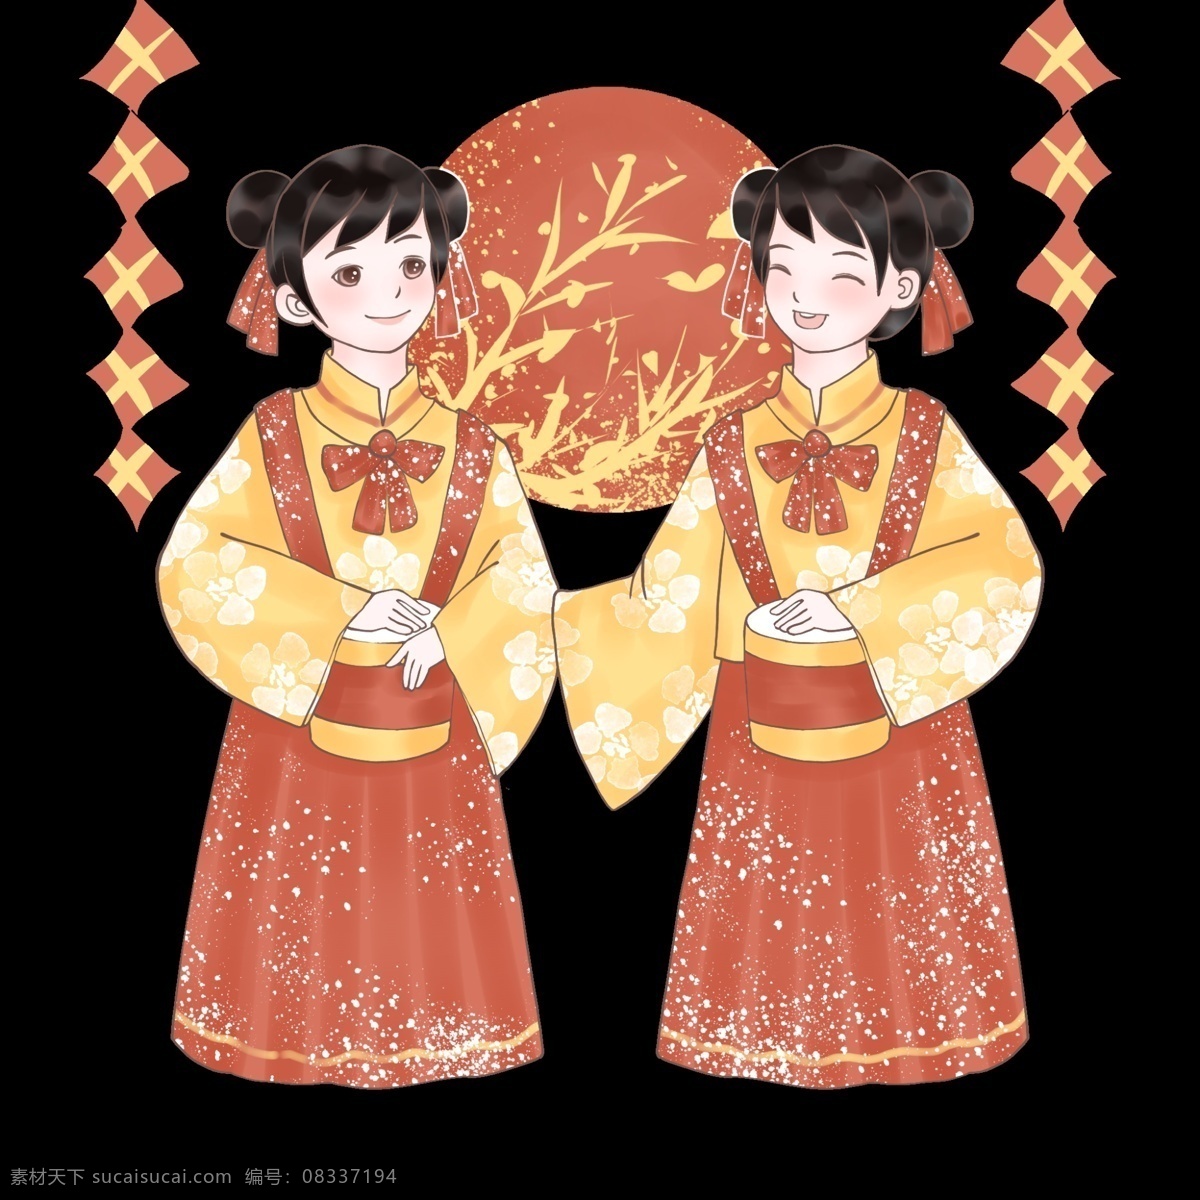 猪年 敲锣打鼓 贺 新年 新年快乐 新中式 中国风 红色 手绘卡通人物 猪年吉祥 2019 农历